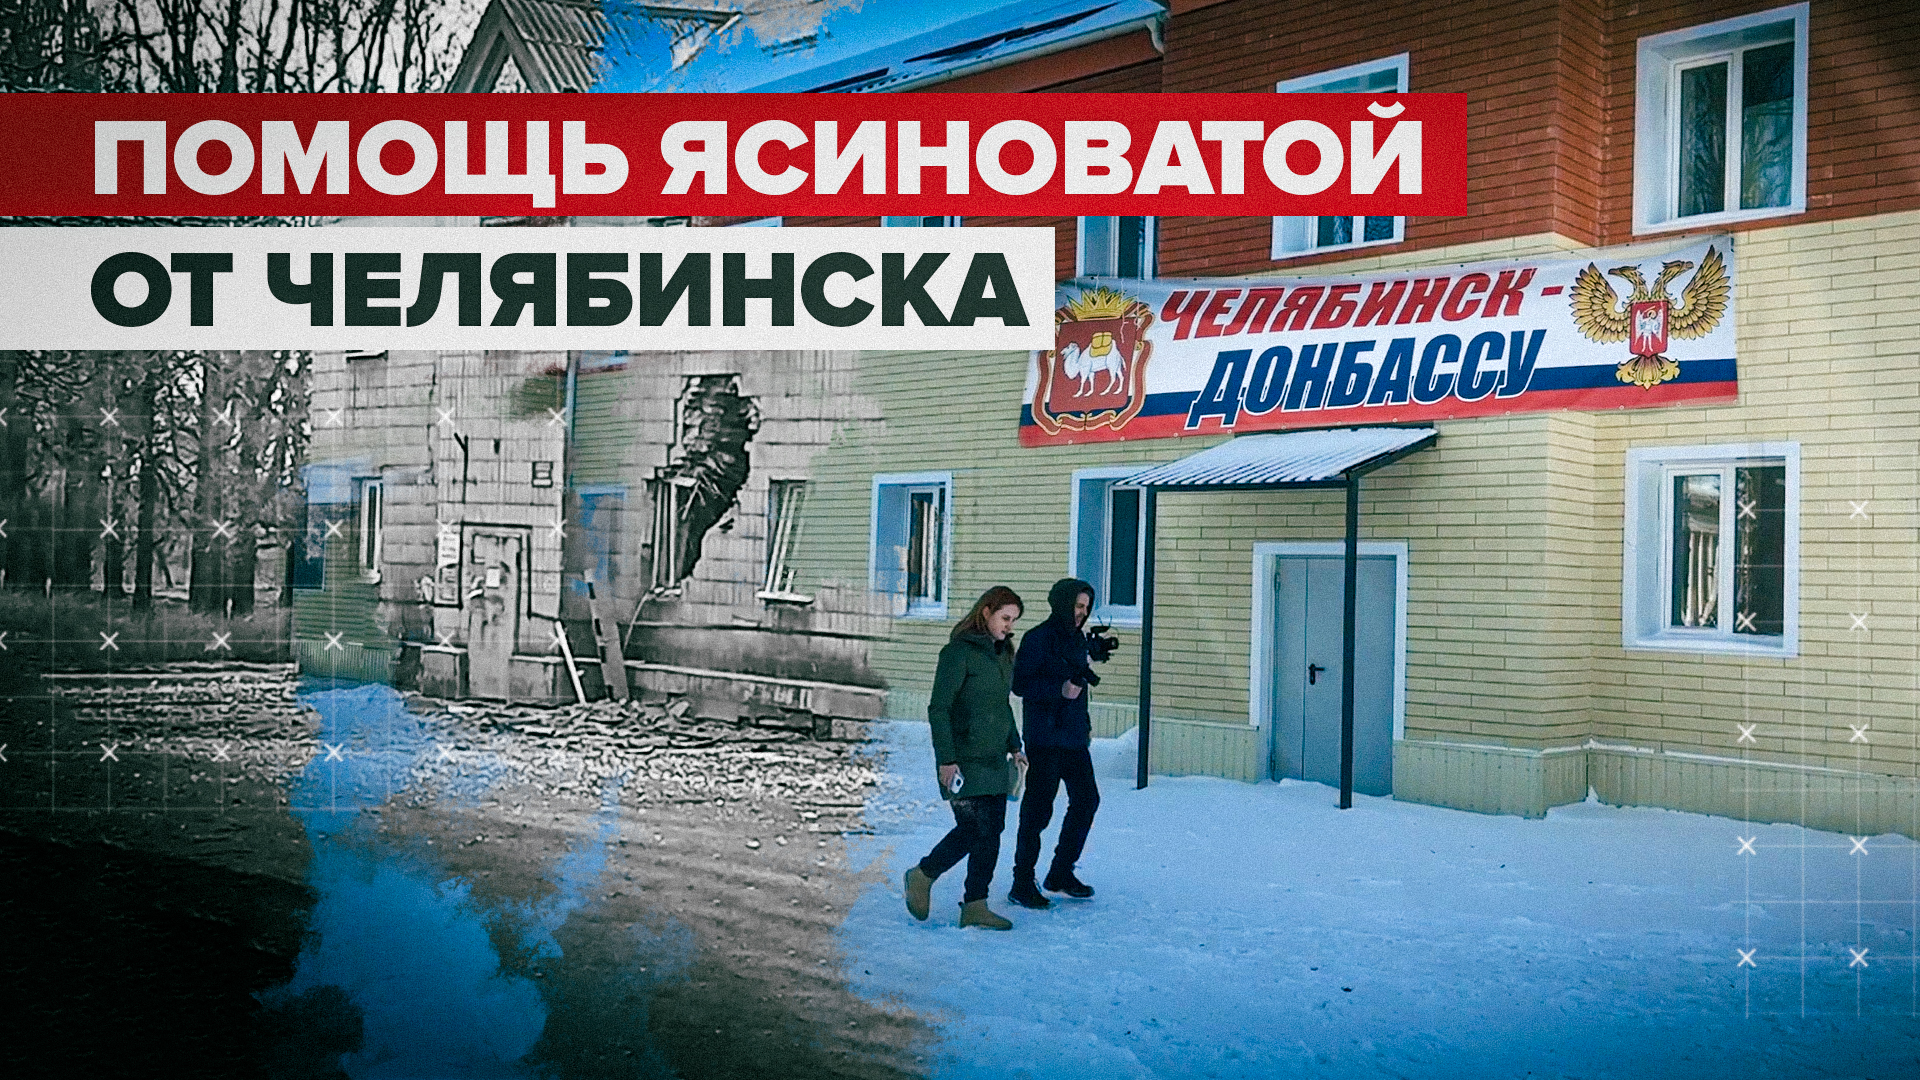 Строительство дорог, оборудование школ и больниц: чем Ясиноватой помогает Челябинск